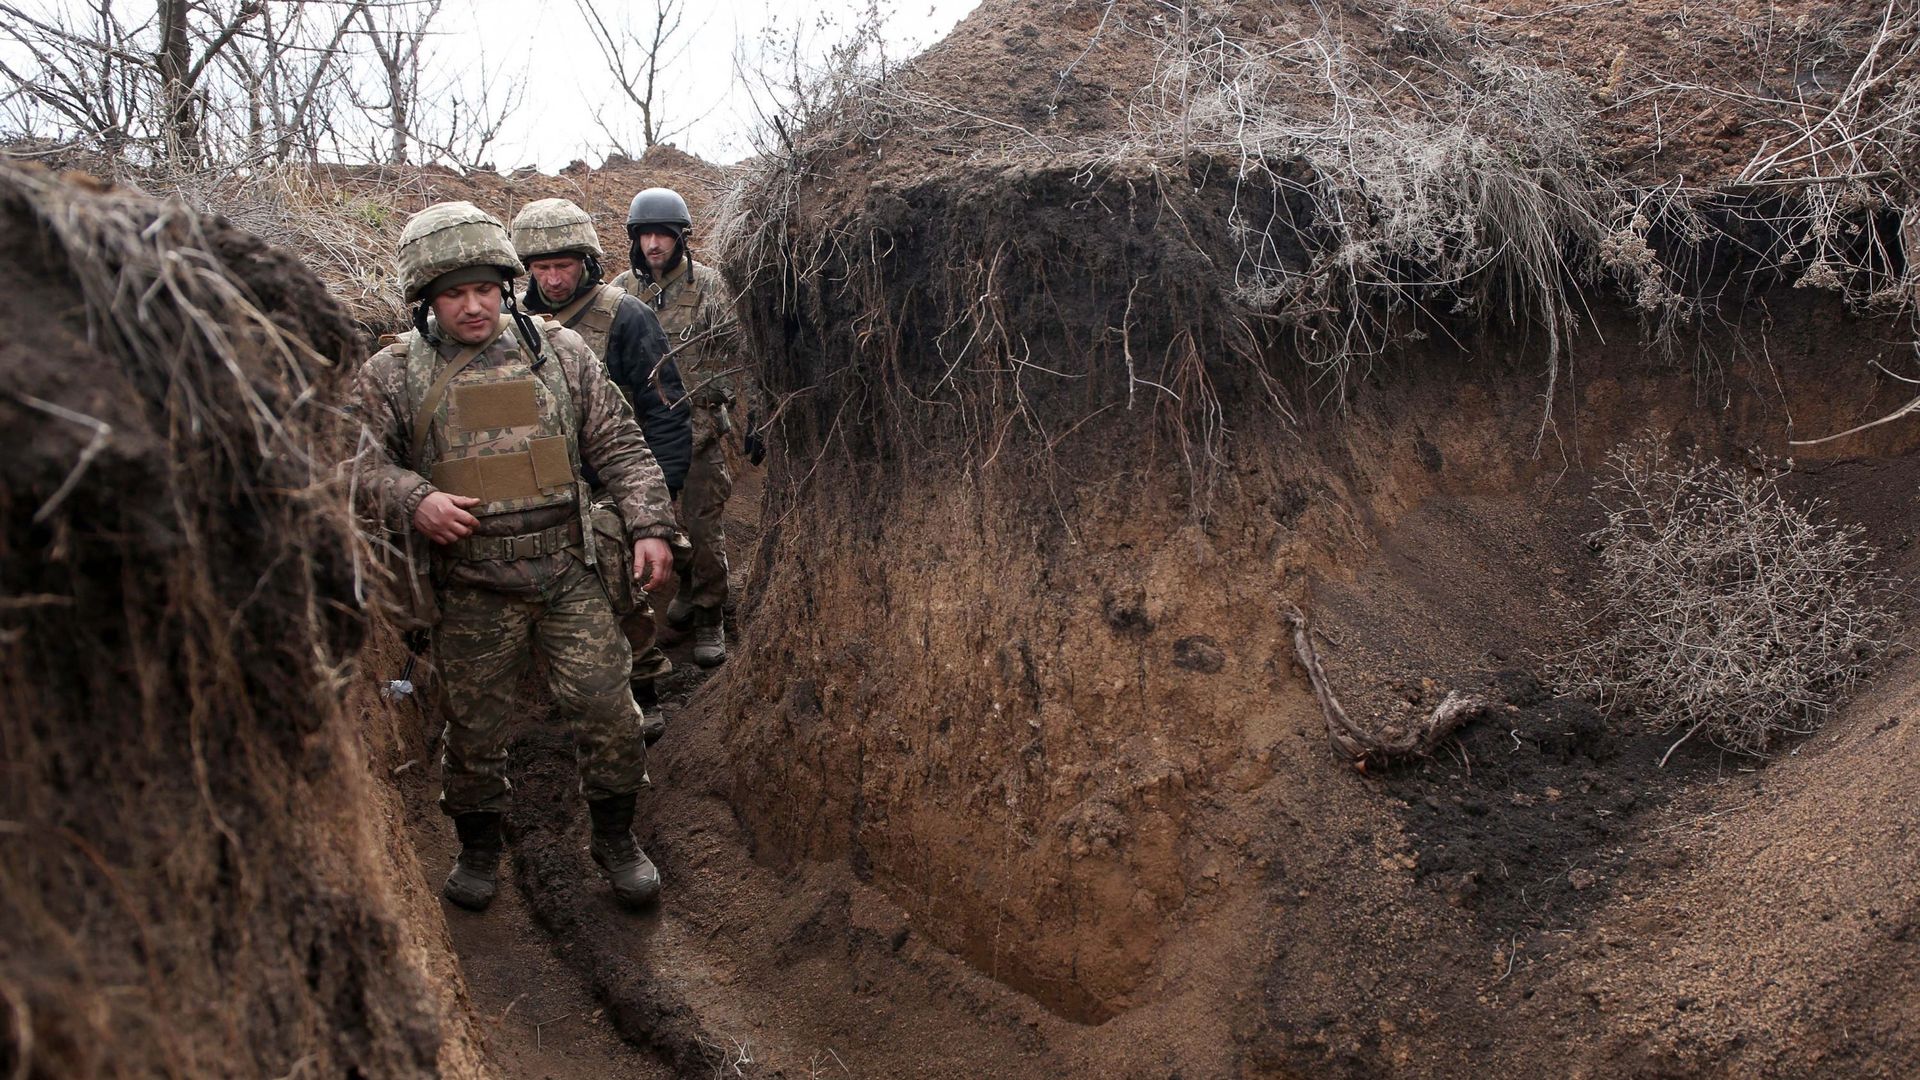 Le président ukrainien, Volodymyr Zelensky, a rendu visite aux militaires en place, à la frontière de son pays.